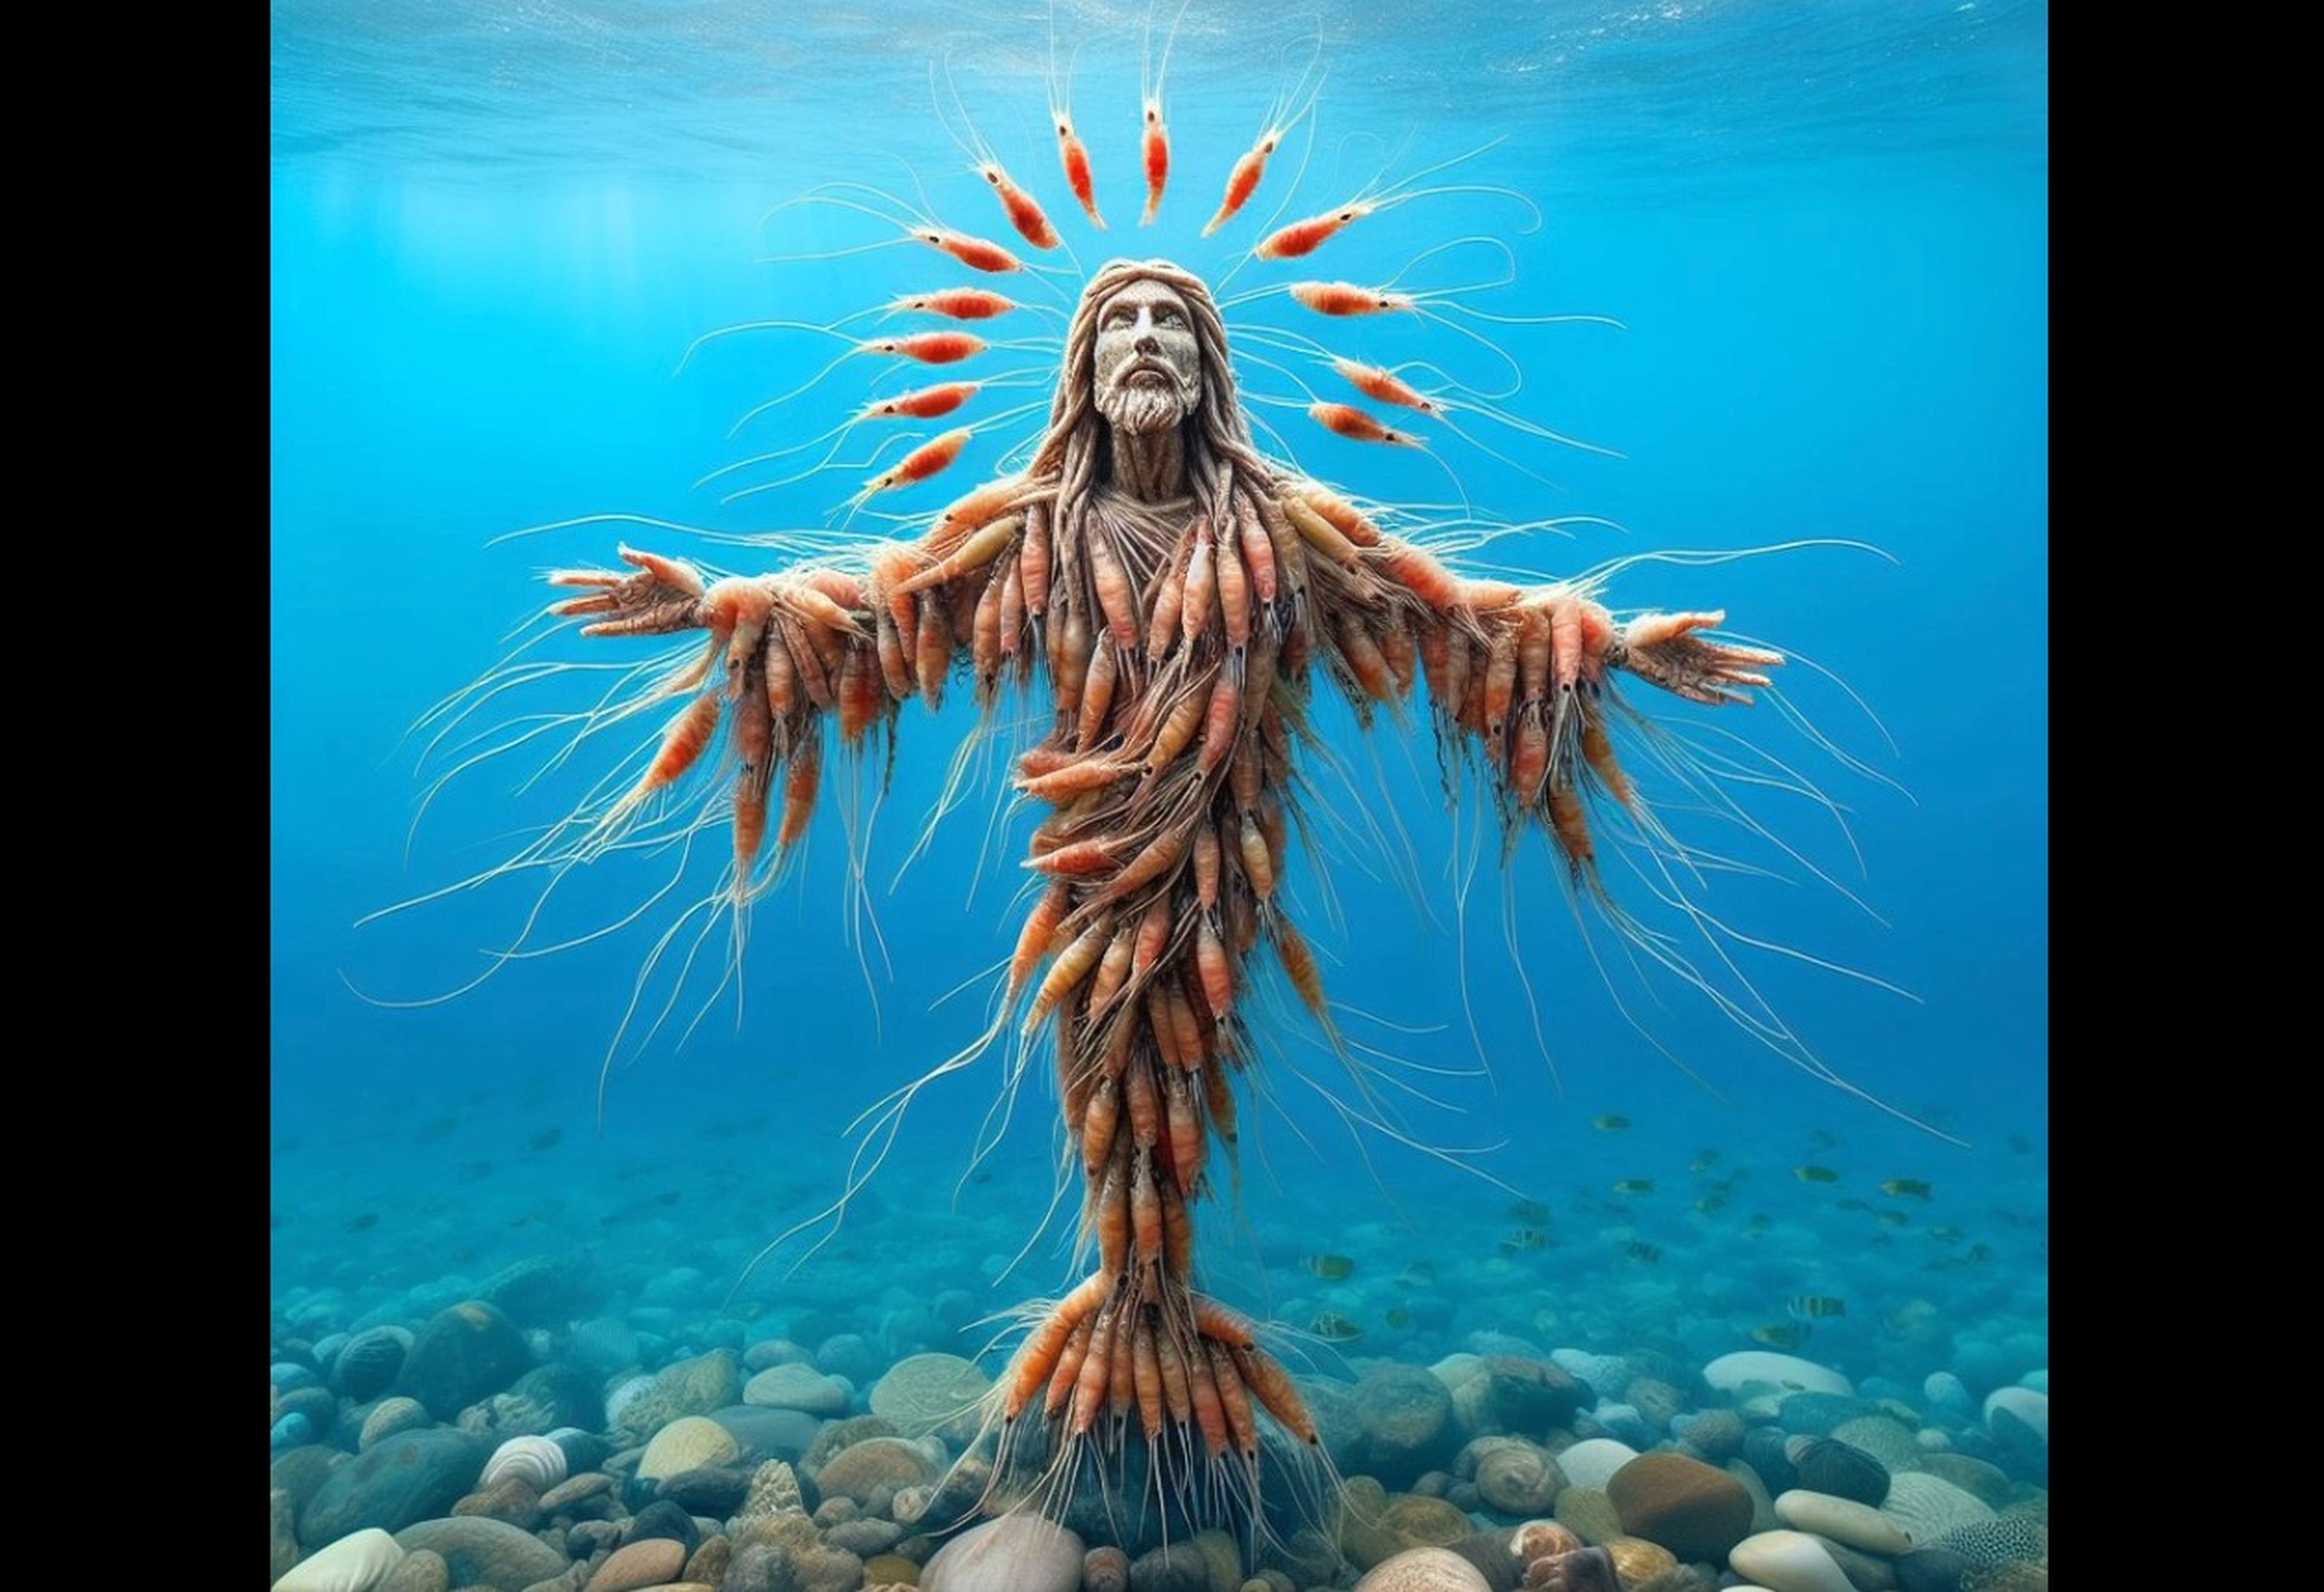 Jesucristo se presenta en múltiples formas crustáceas en una página de Facebook de inteligencia artificial llamada "Love God & God Love You".